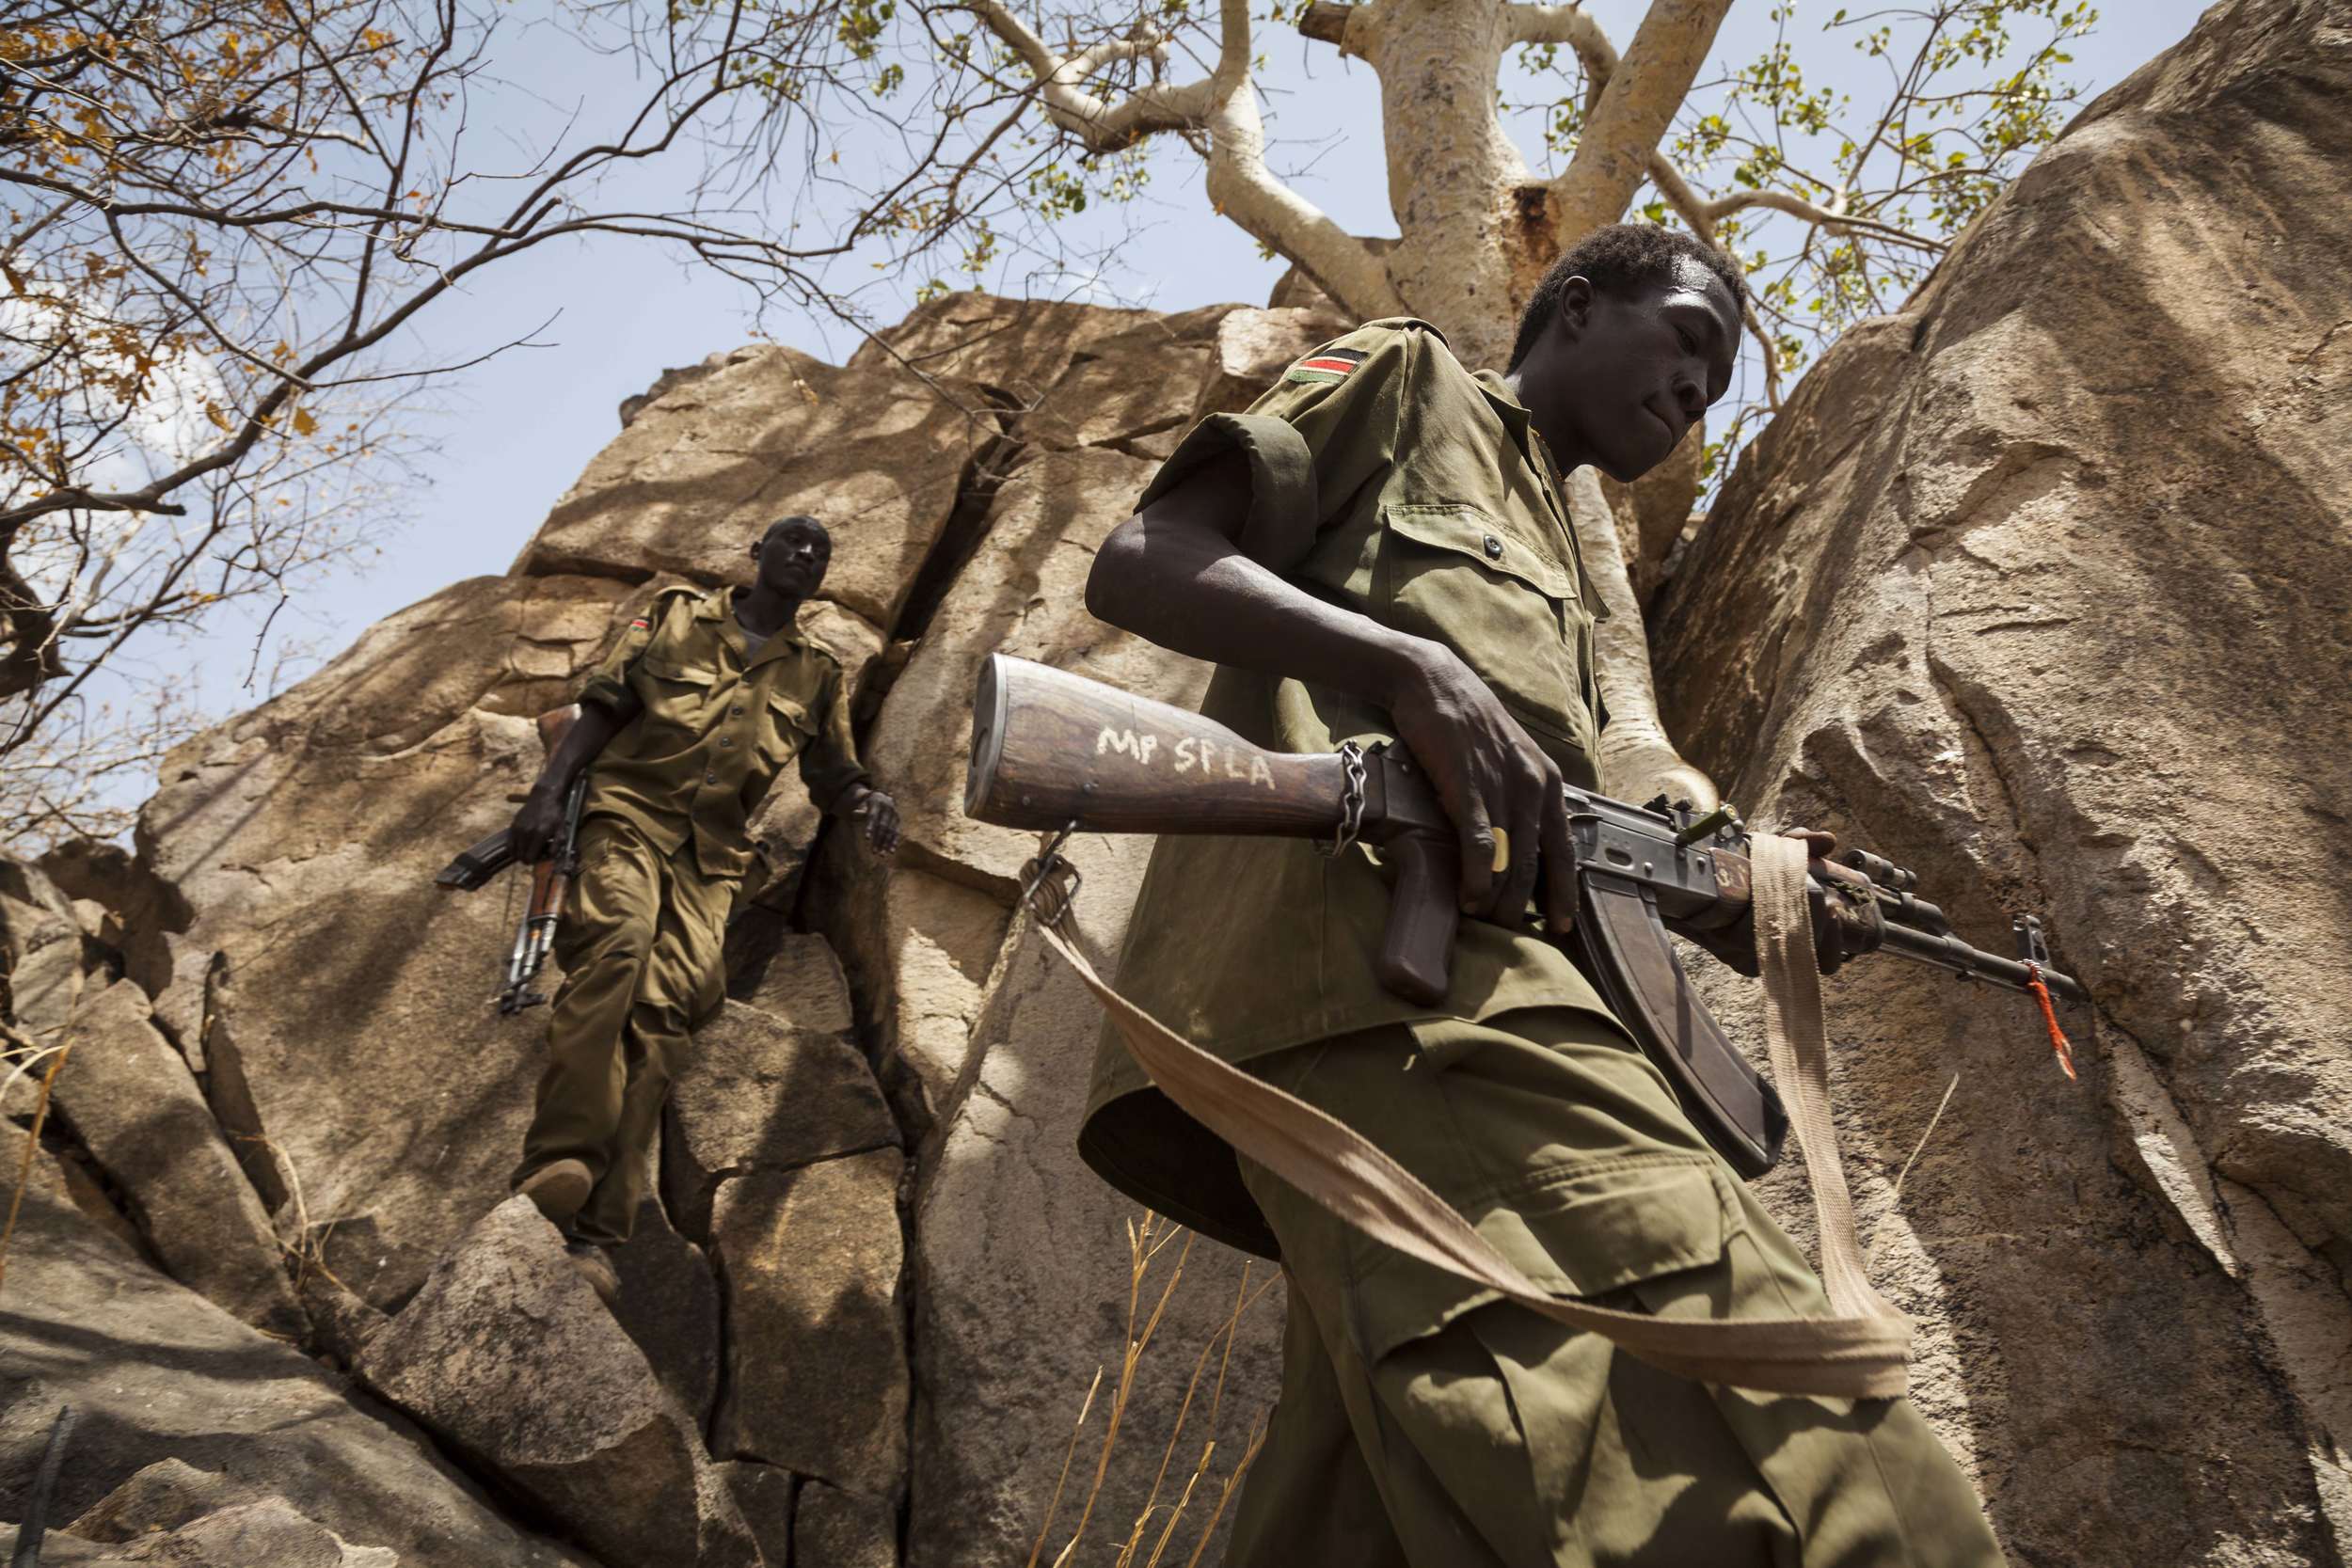 جنود من الجيش الشعبي  لتحرير السودان - قطاع الشمال يتسلقون جبال جنوب كردفان، في السودان، 25 أبريل 